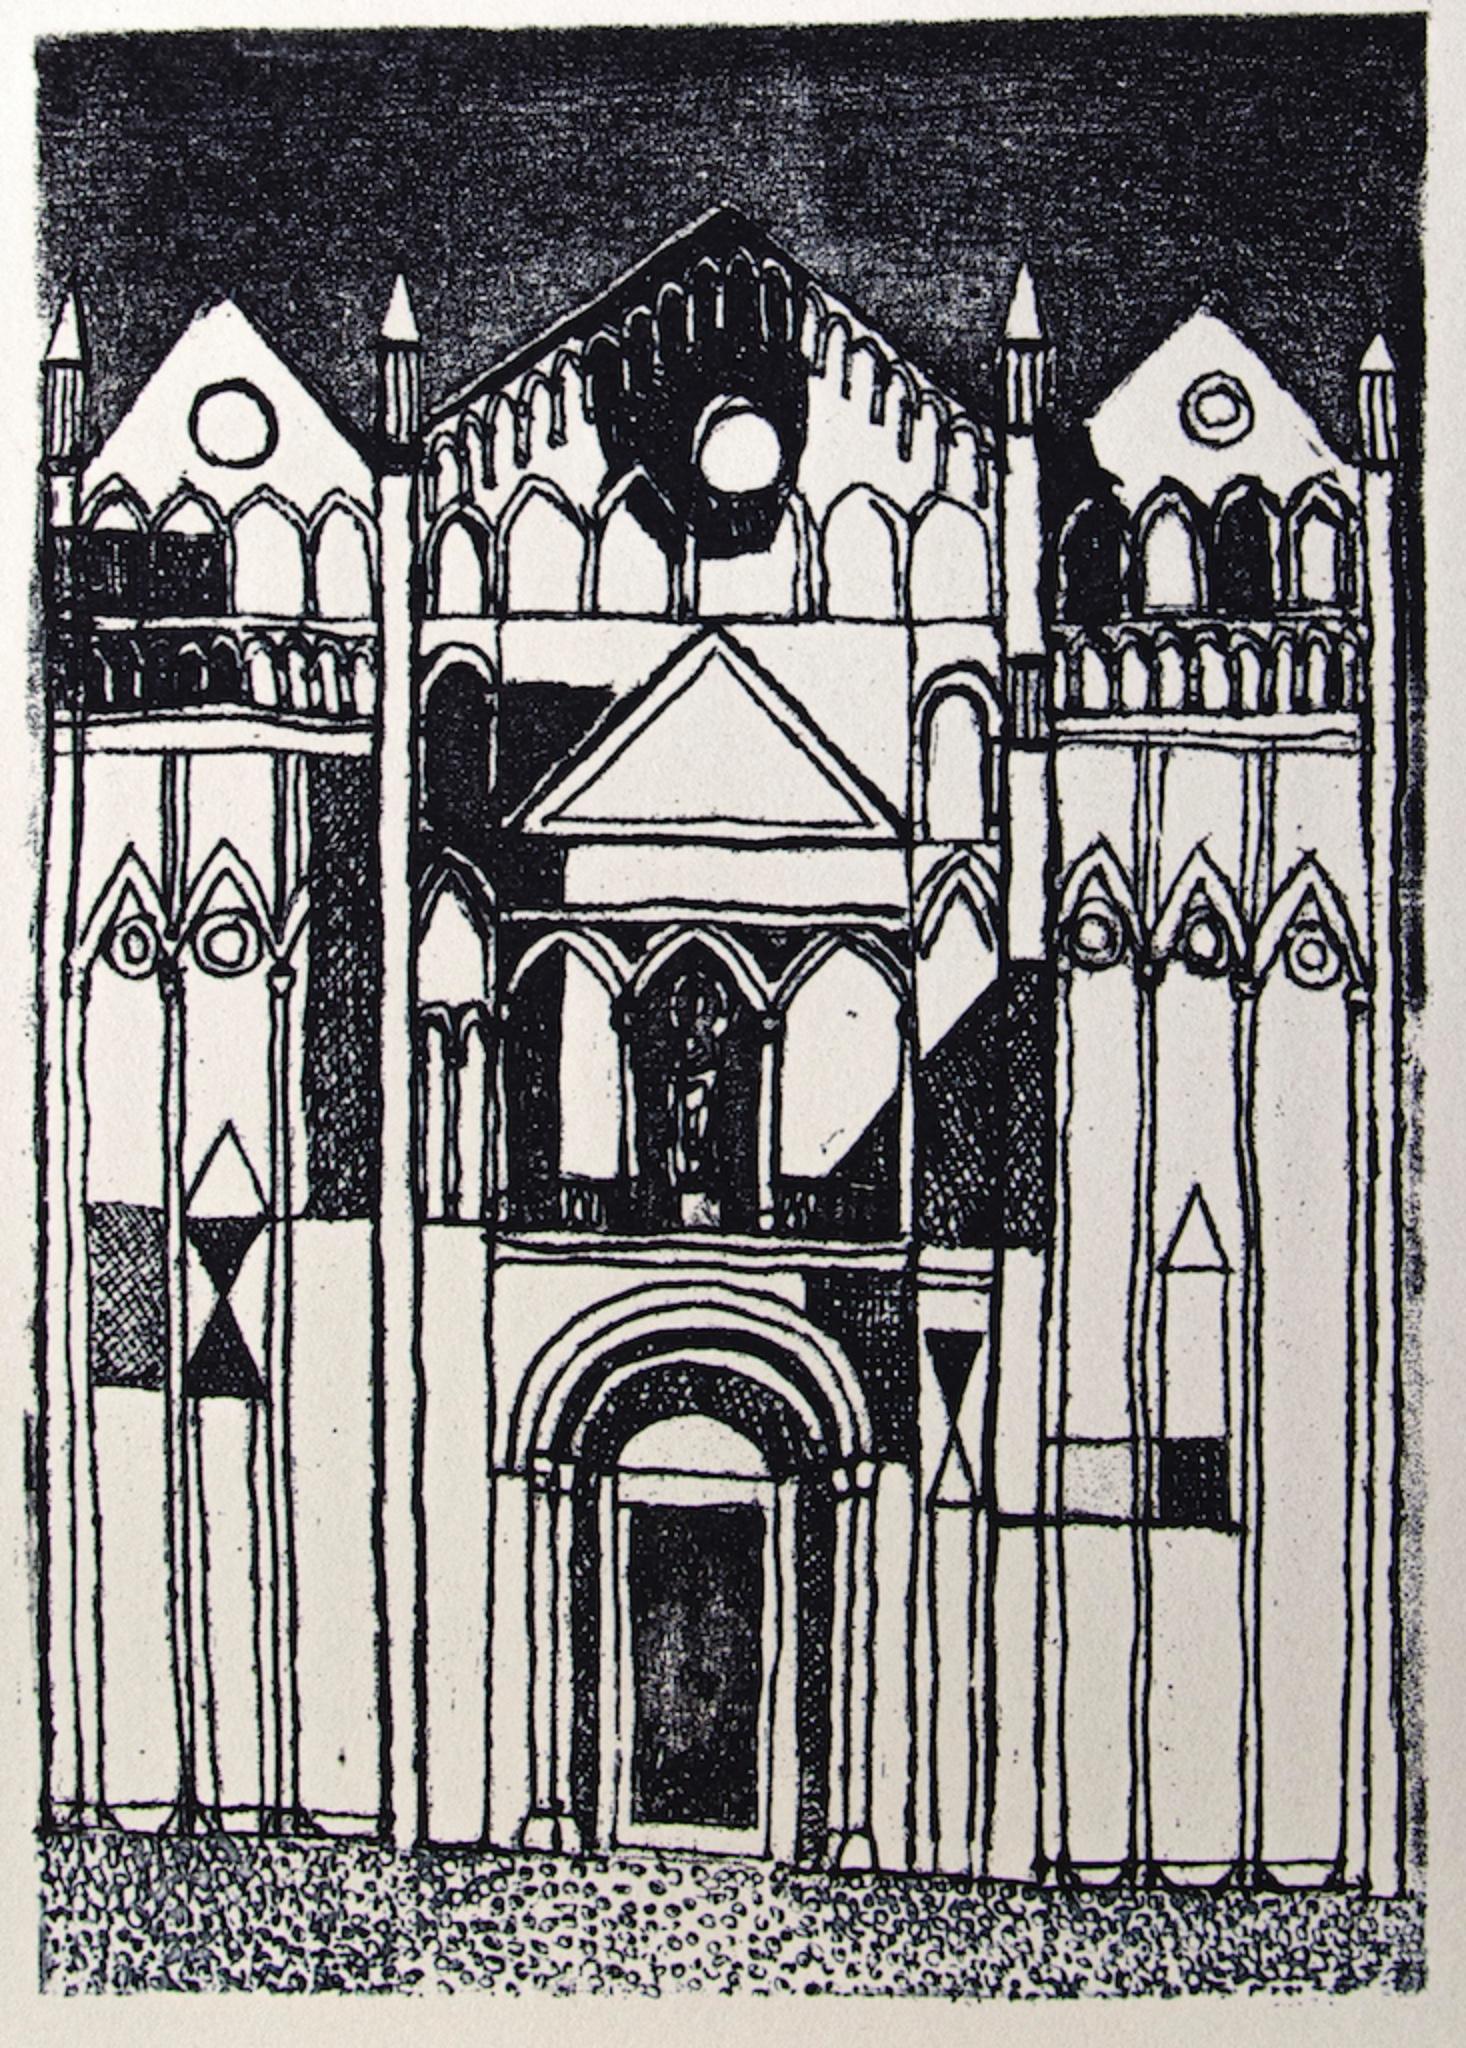 La Cathédrale est une impression offset originale sur papier couleur ivoire, réalisée par Franco Gentilini (peintre italien, 1909-1981), dans les années 1970.

L'état de conservation des œuvres d'art est excellent.
Dimensions de l'image： 24,5 x 17,5